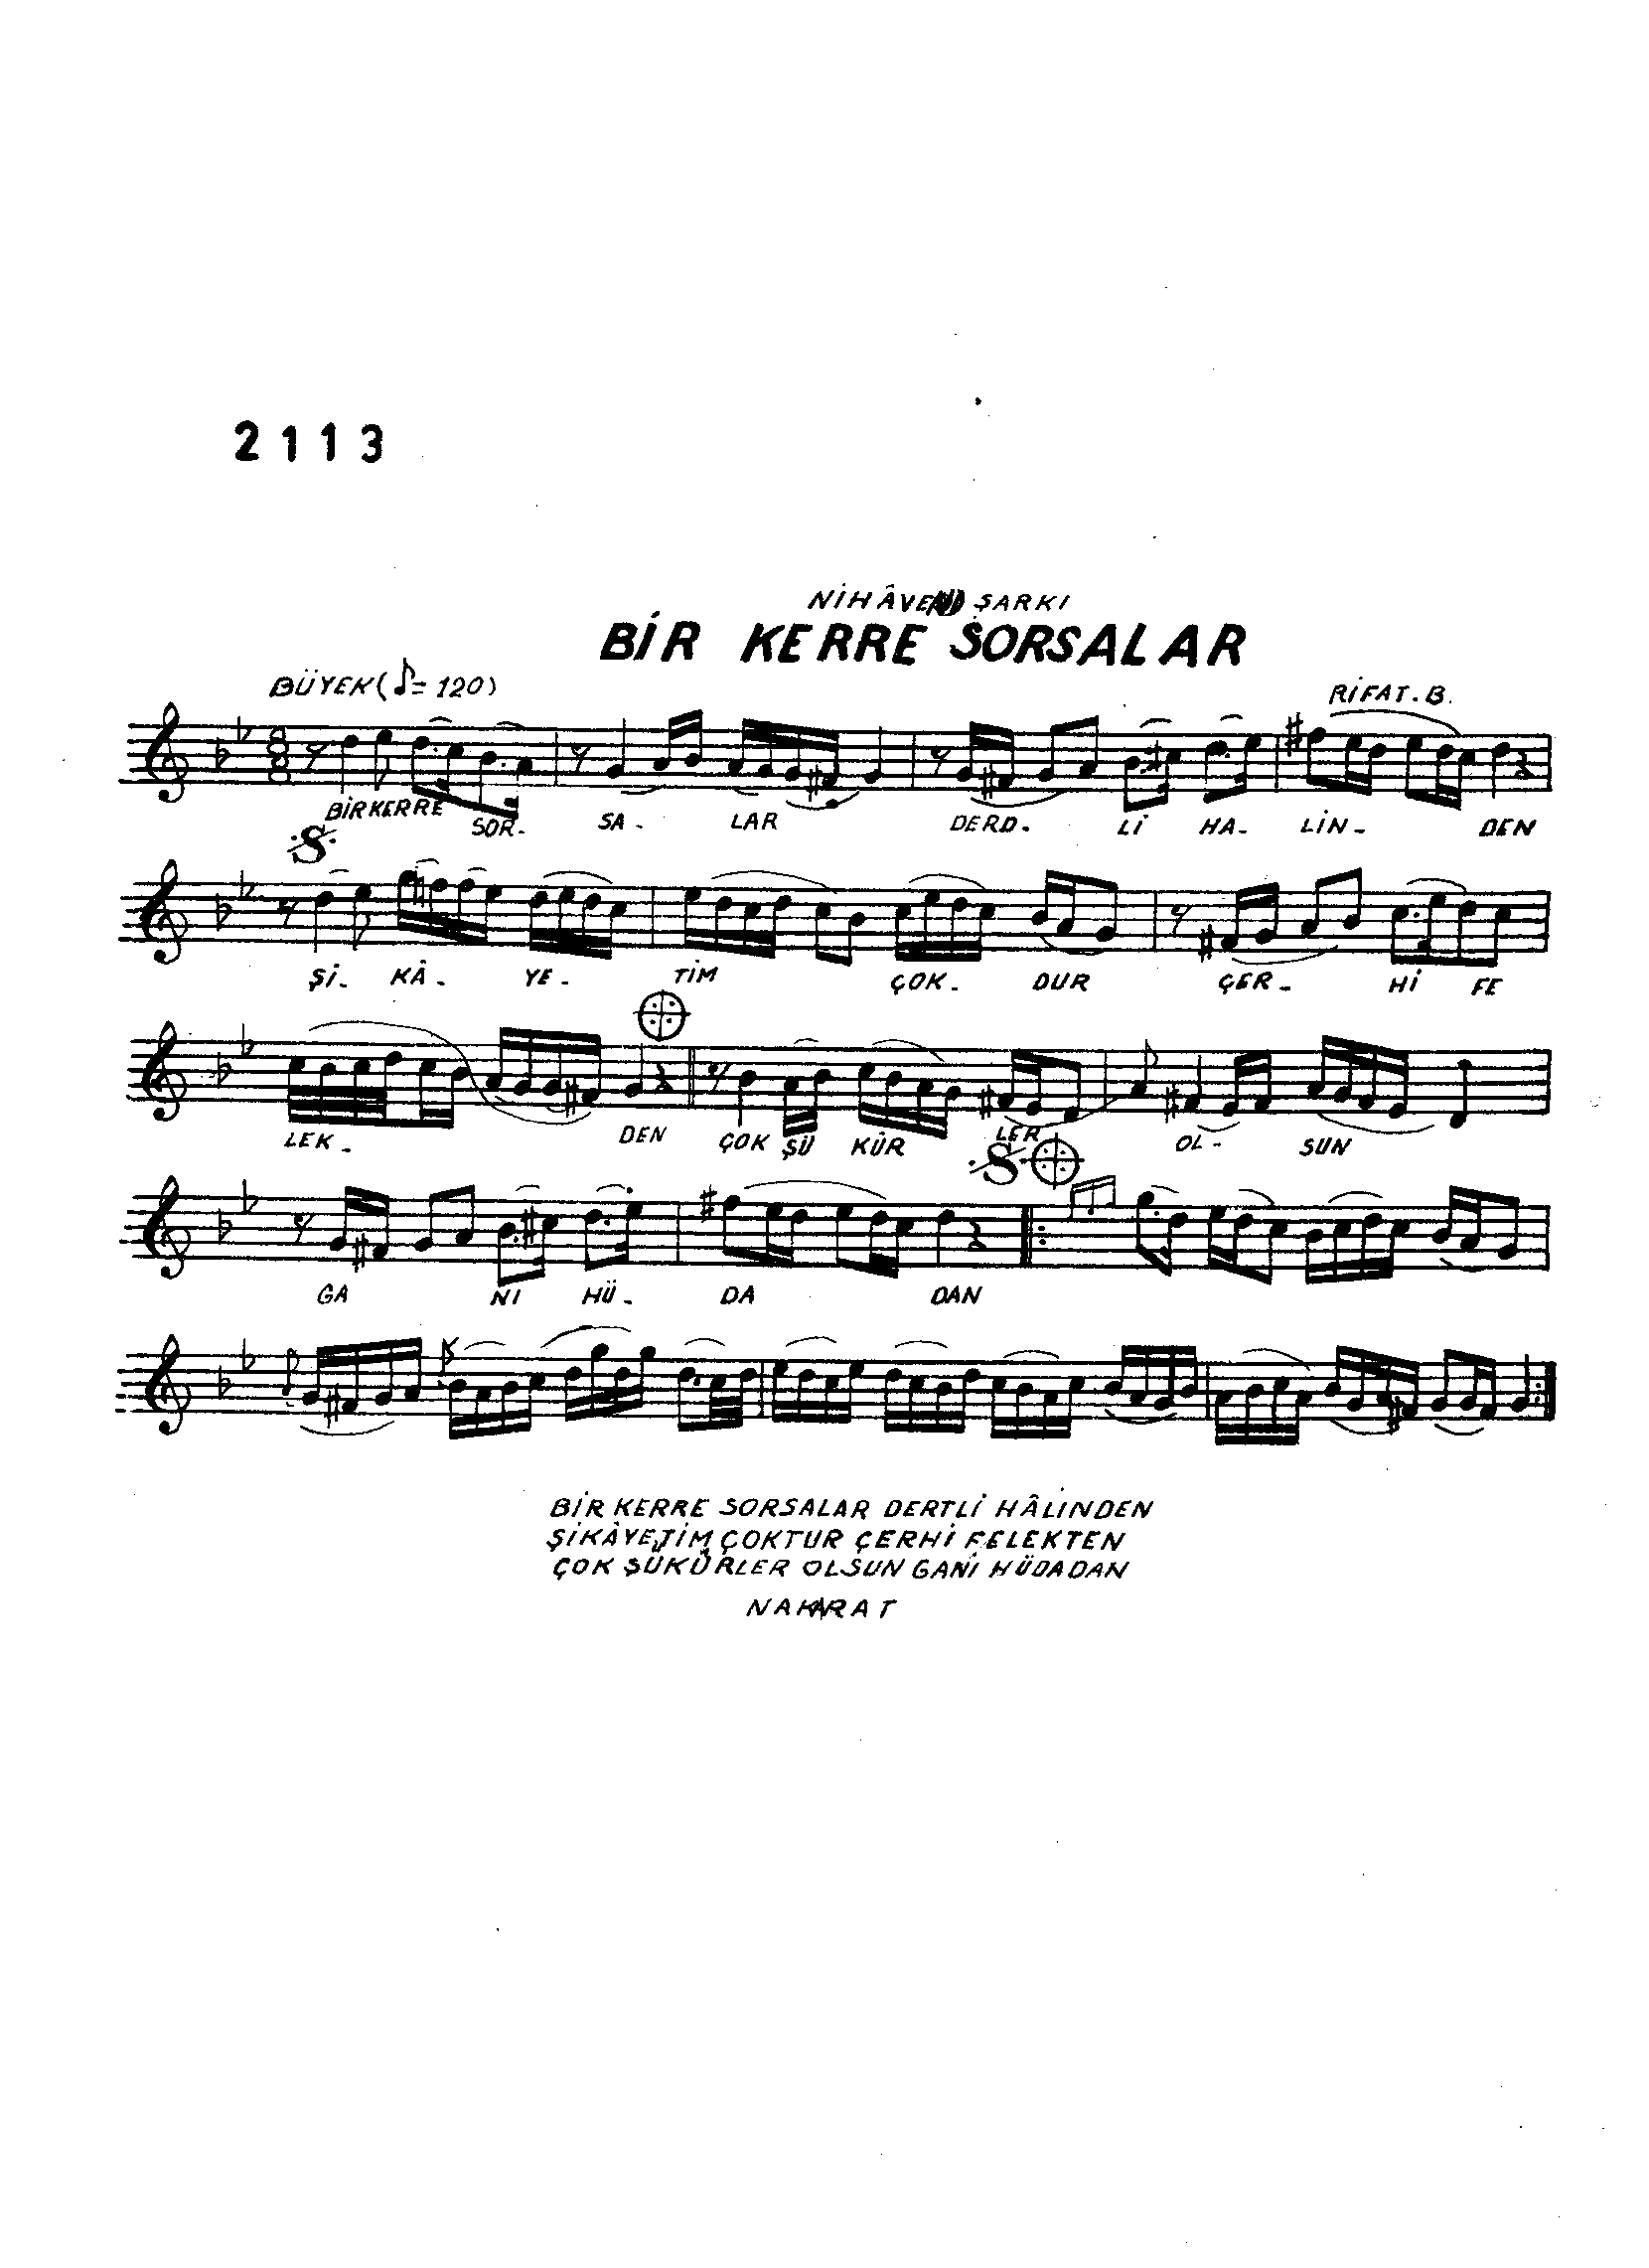 Nihâvend - Şarkı - Rif'at Bey - Sayfa 1